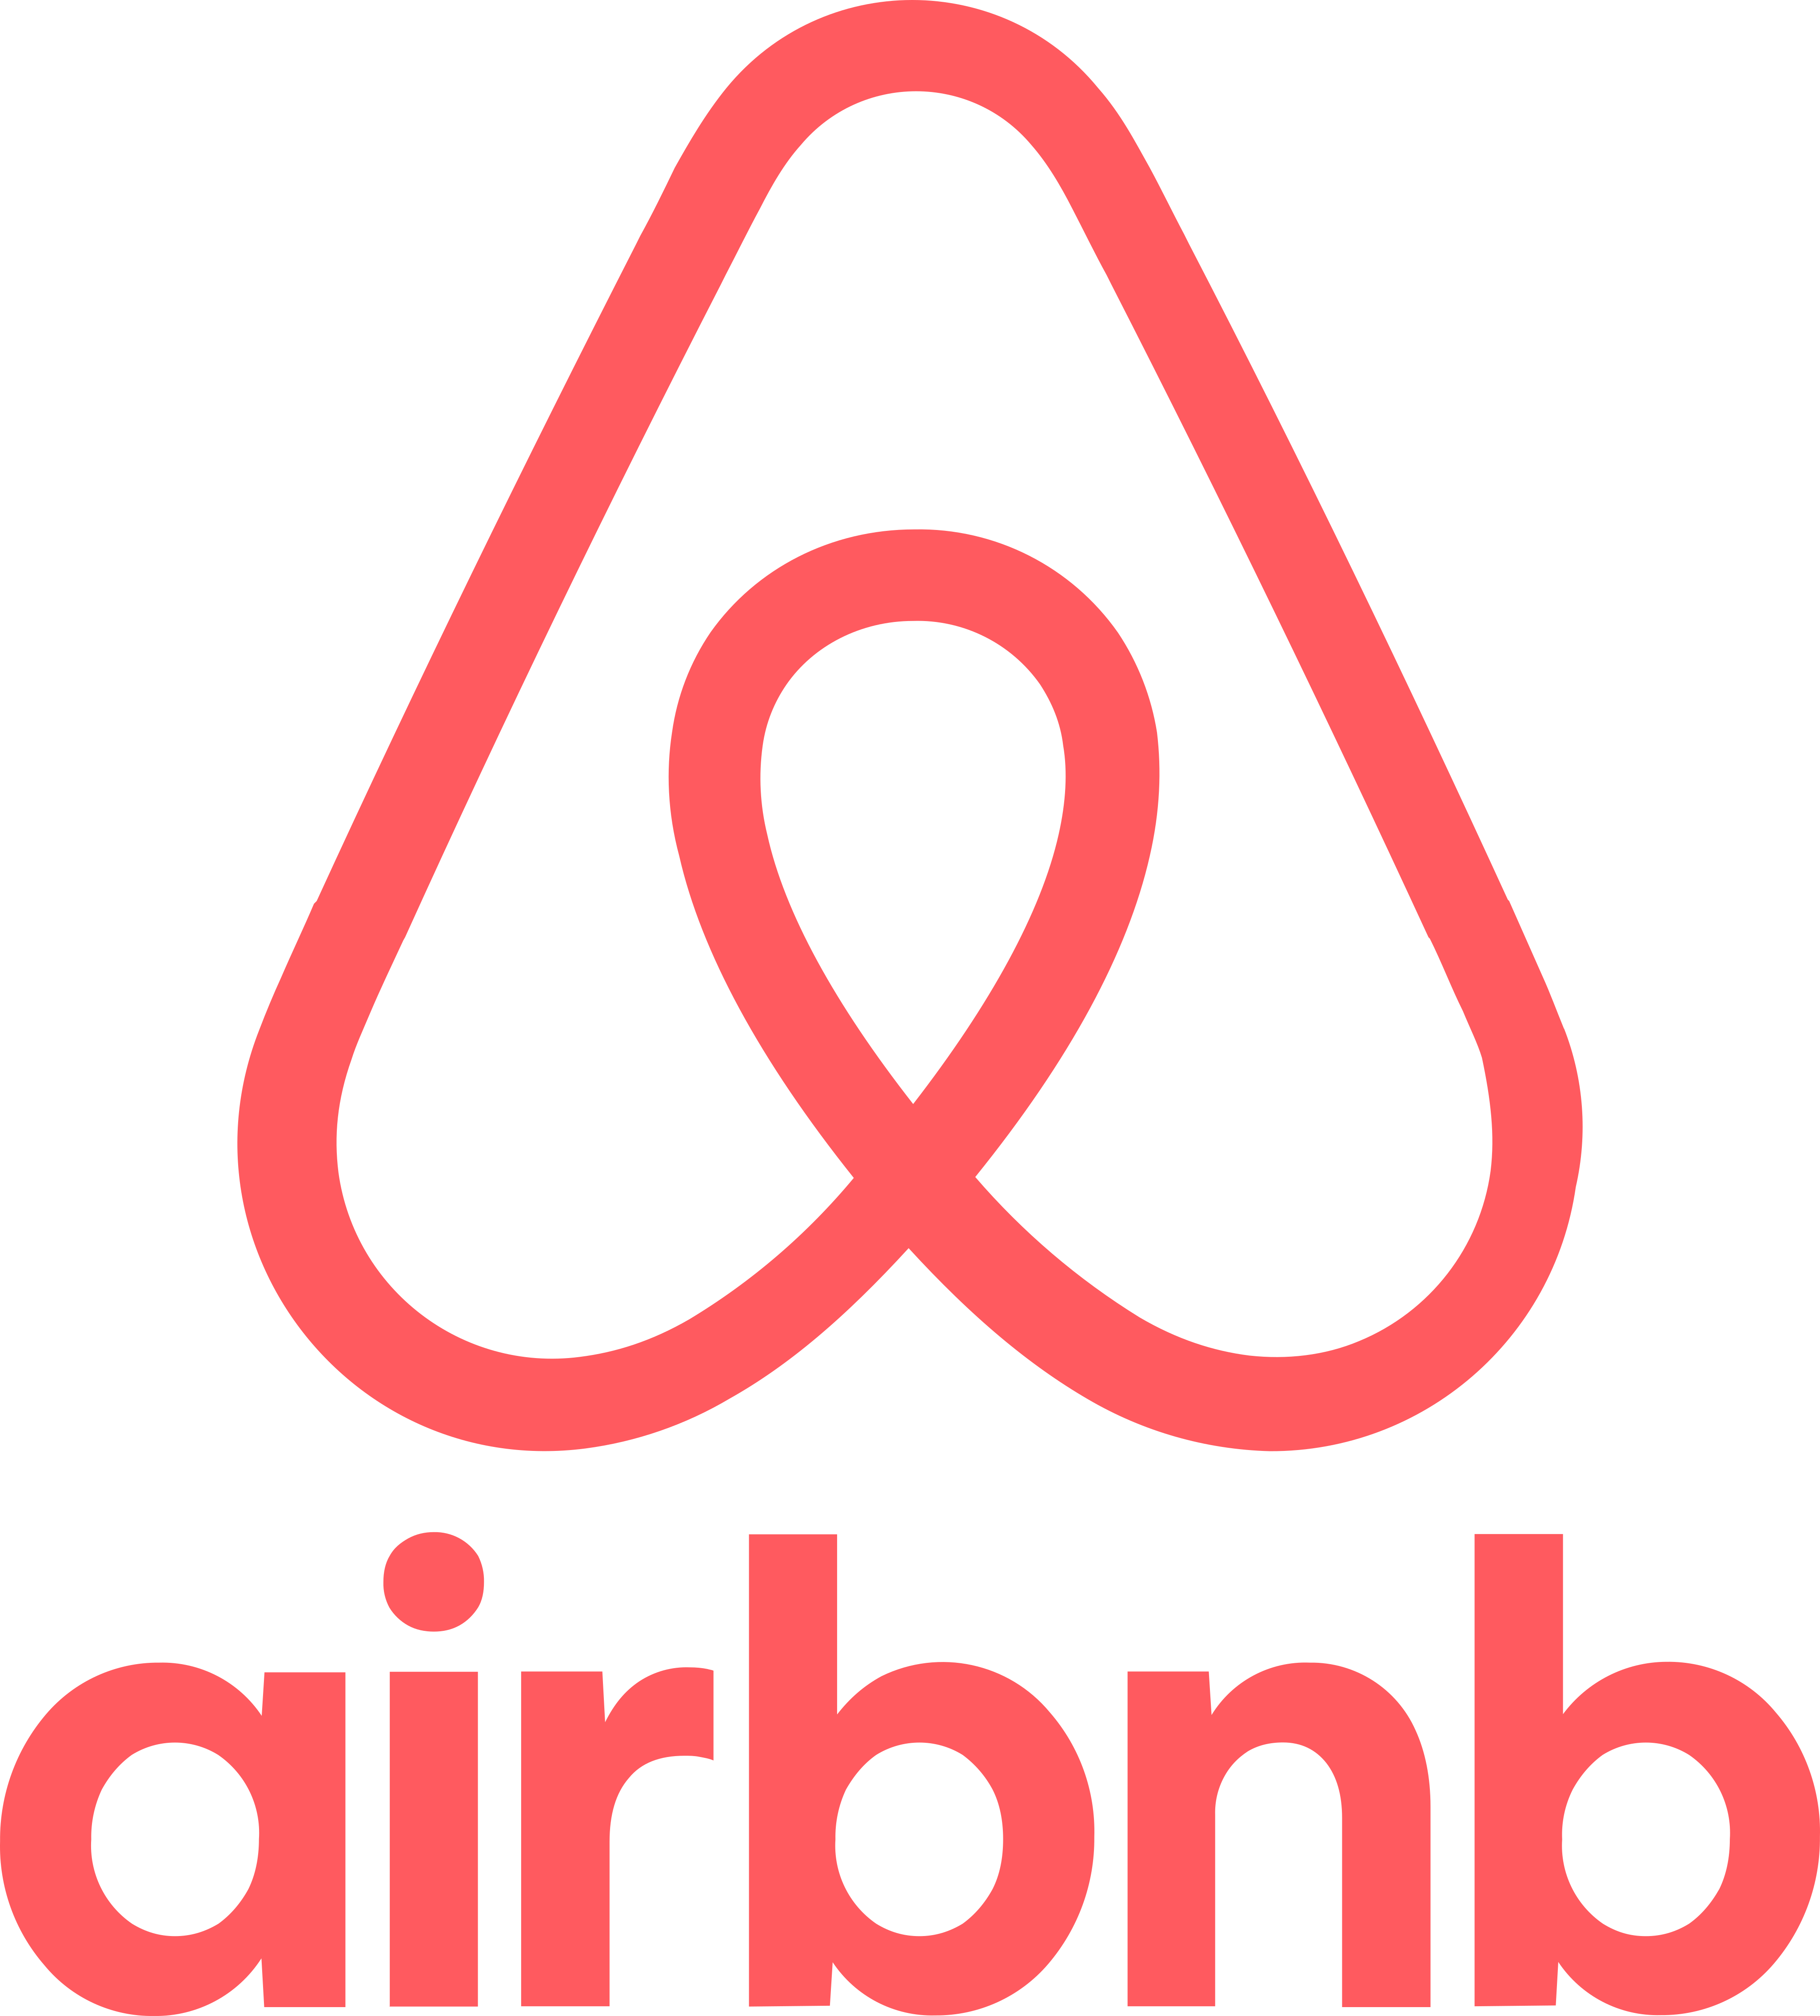 airbnb logo 1 1 - Airbnb Logo